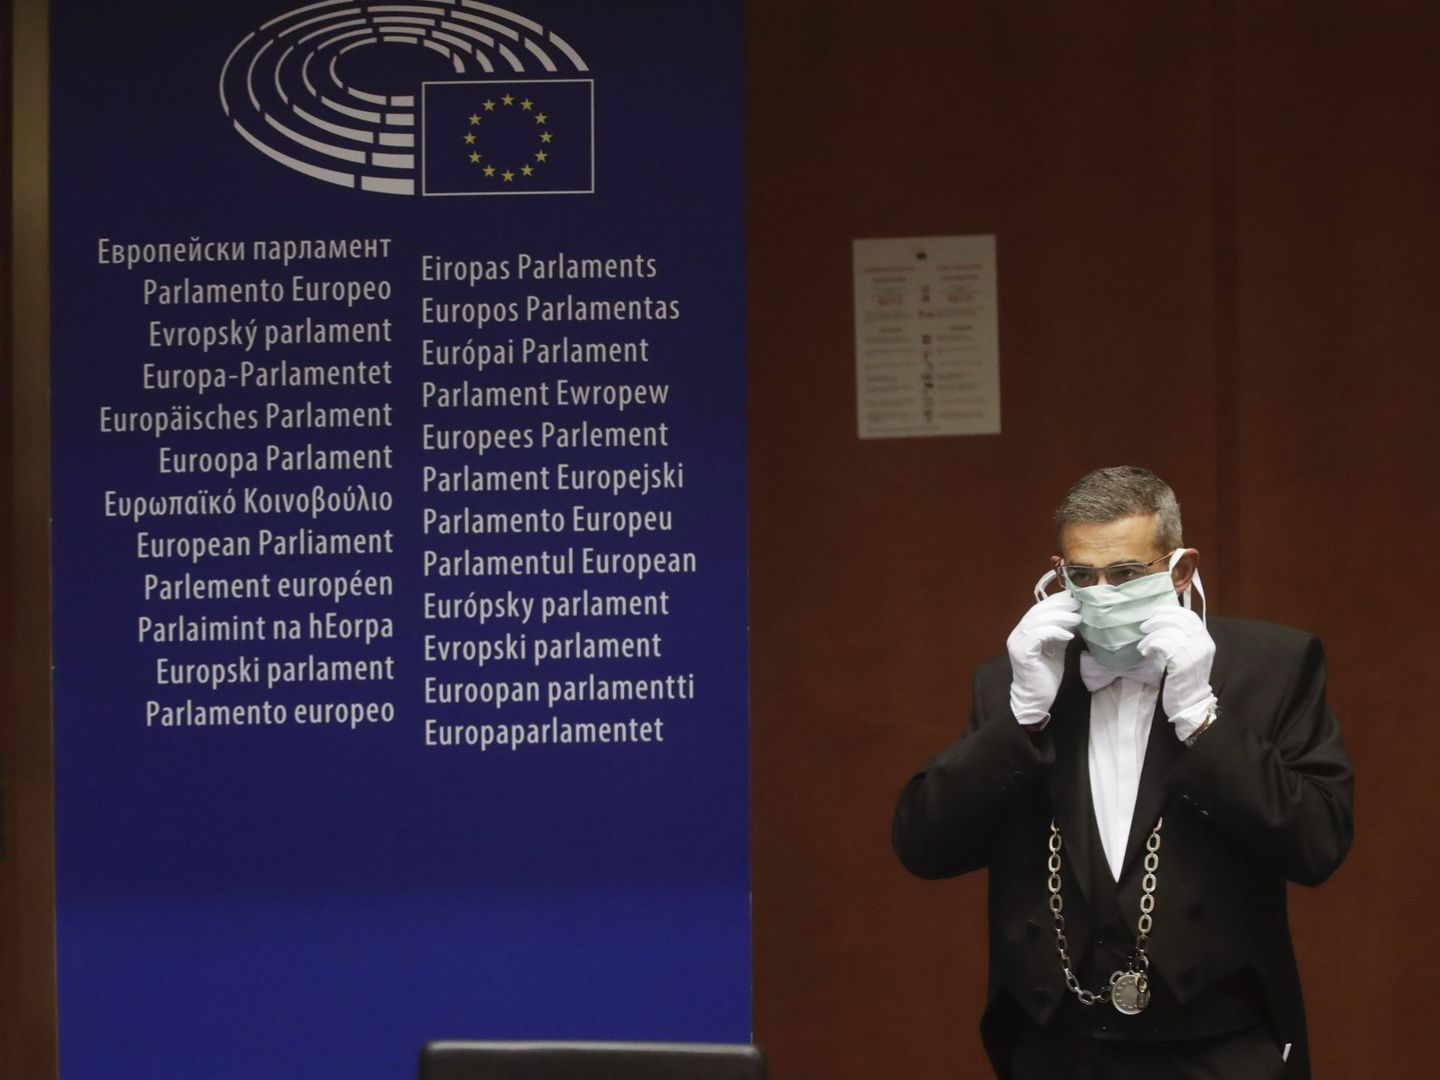 Un ujier del Parlamento Europeo durante la pandemia. (EFE)